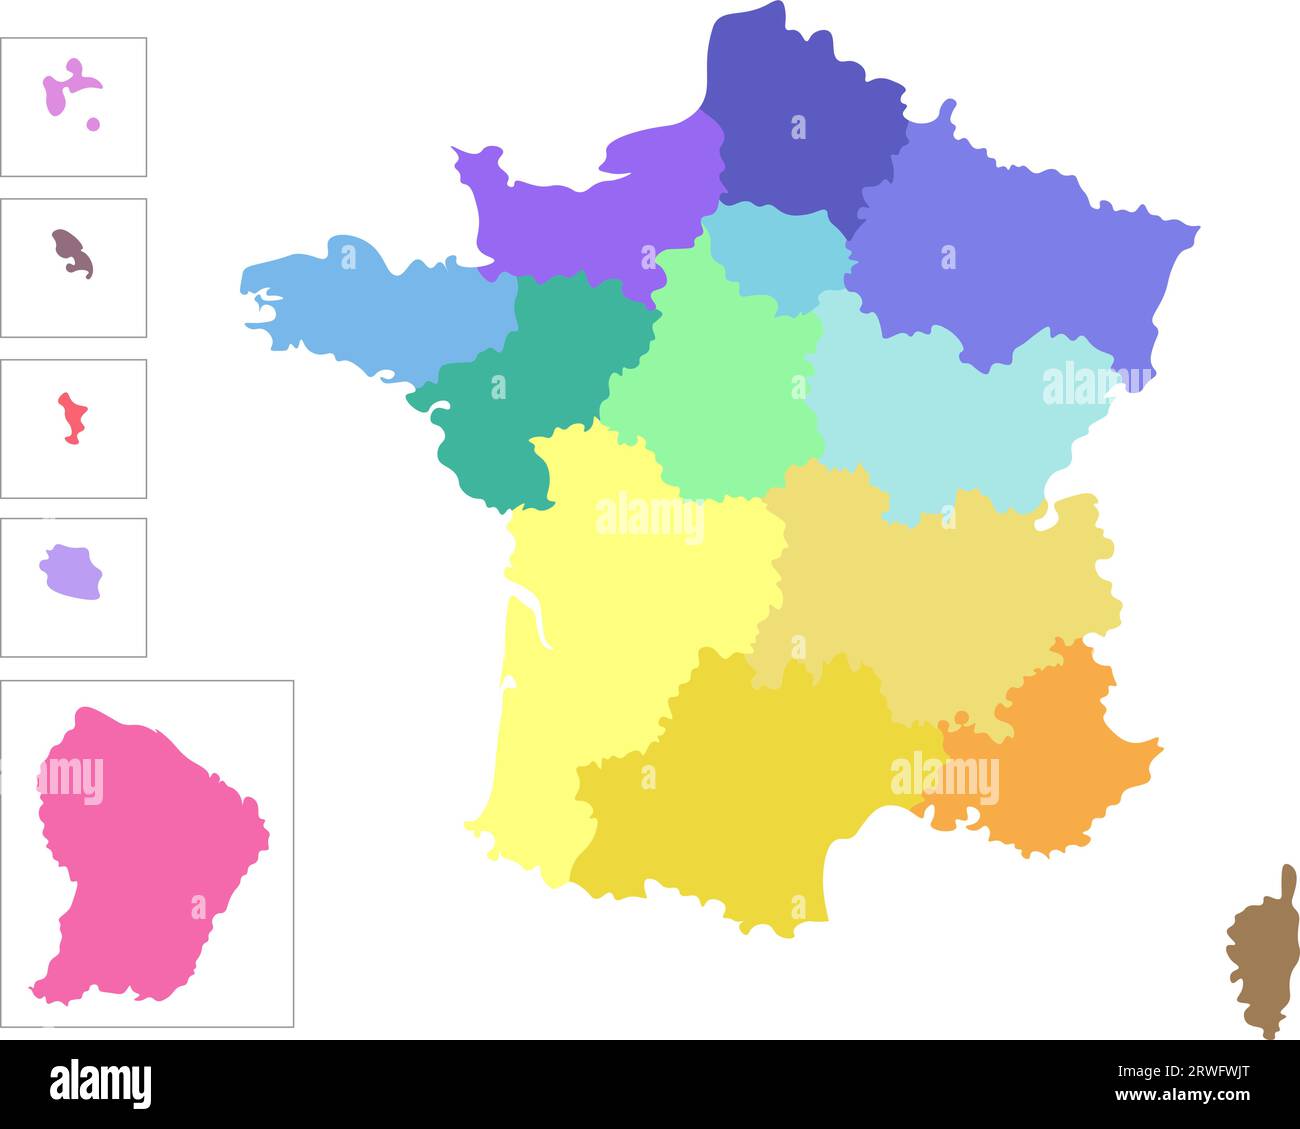 Vektor-isolierte Illustration der vereinfachten Verwaltungskarte Frankreichs. Grenzen der Regionen. Farbenfrohe Silhouetten Stock Vektor